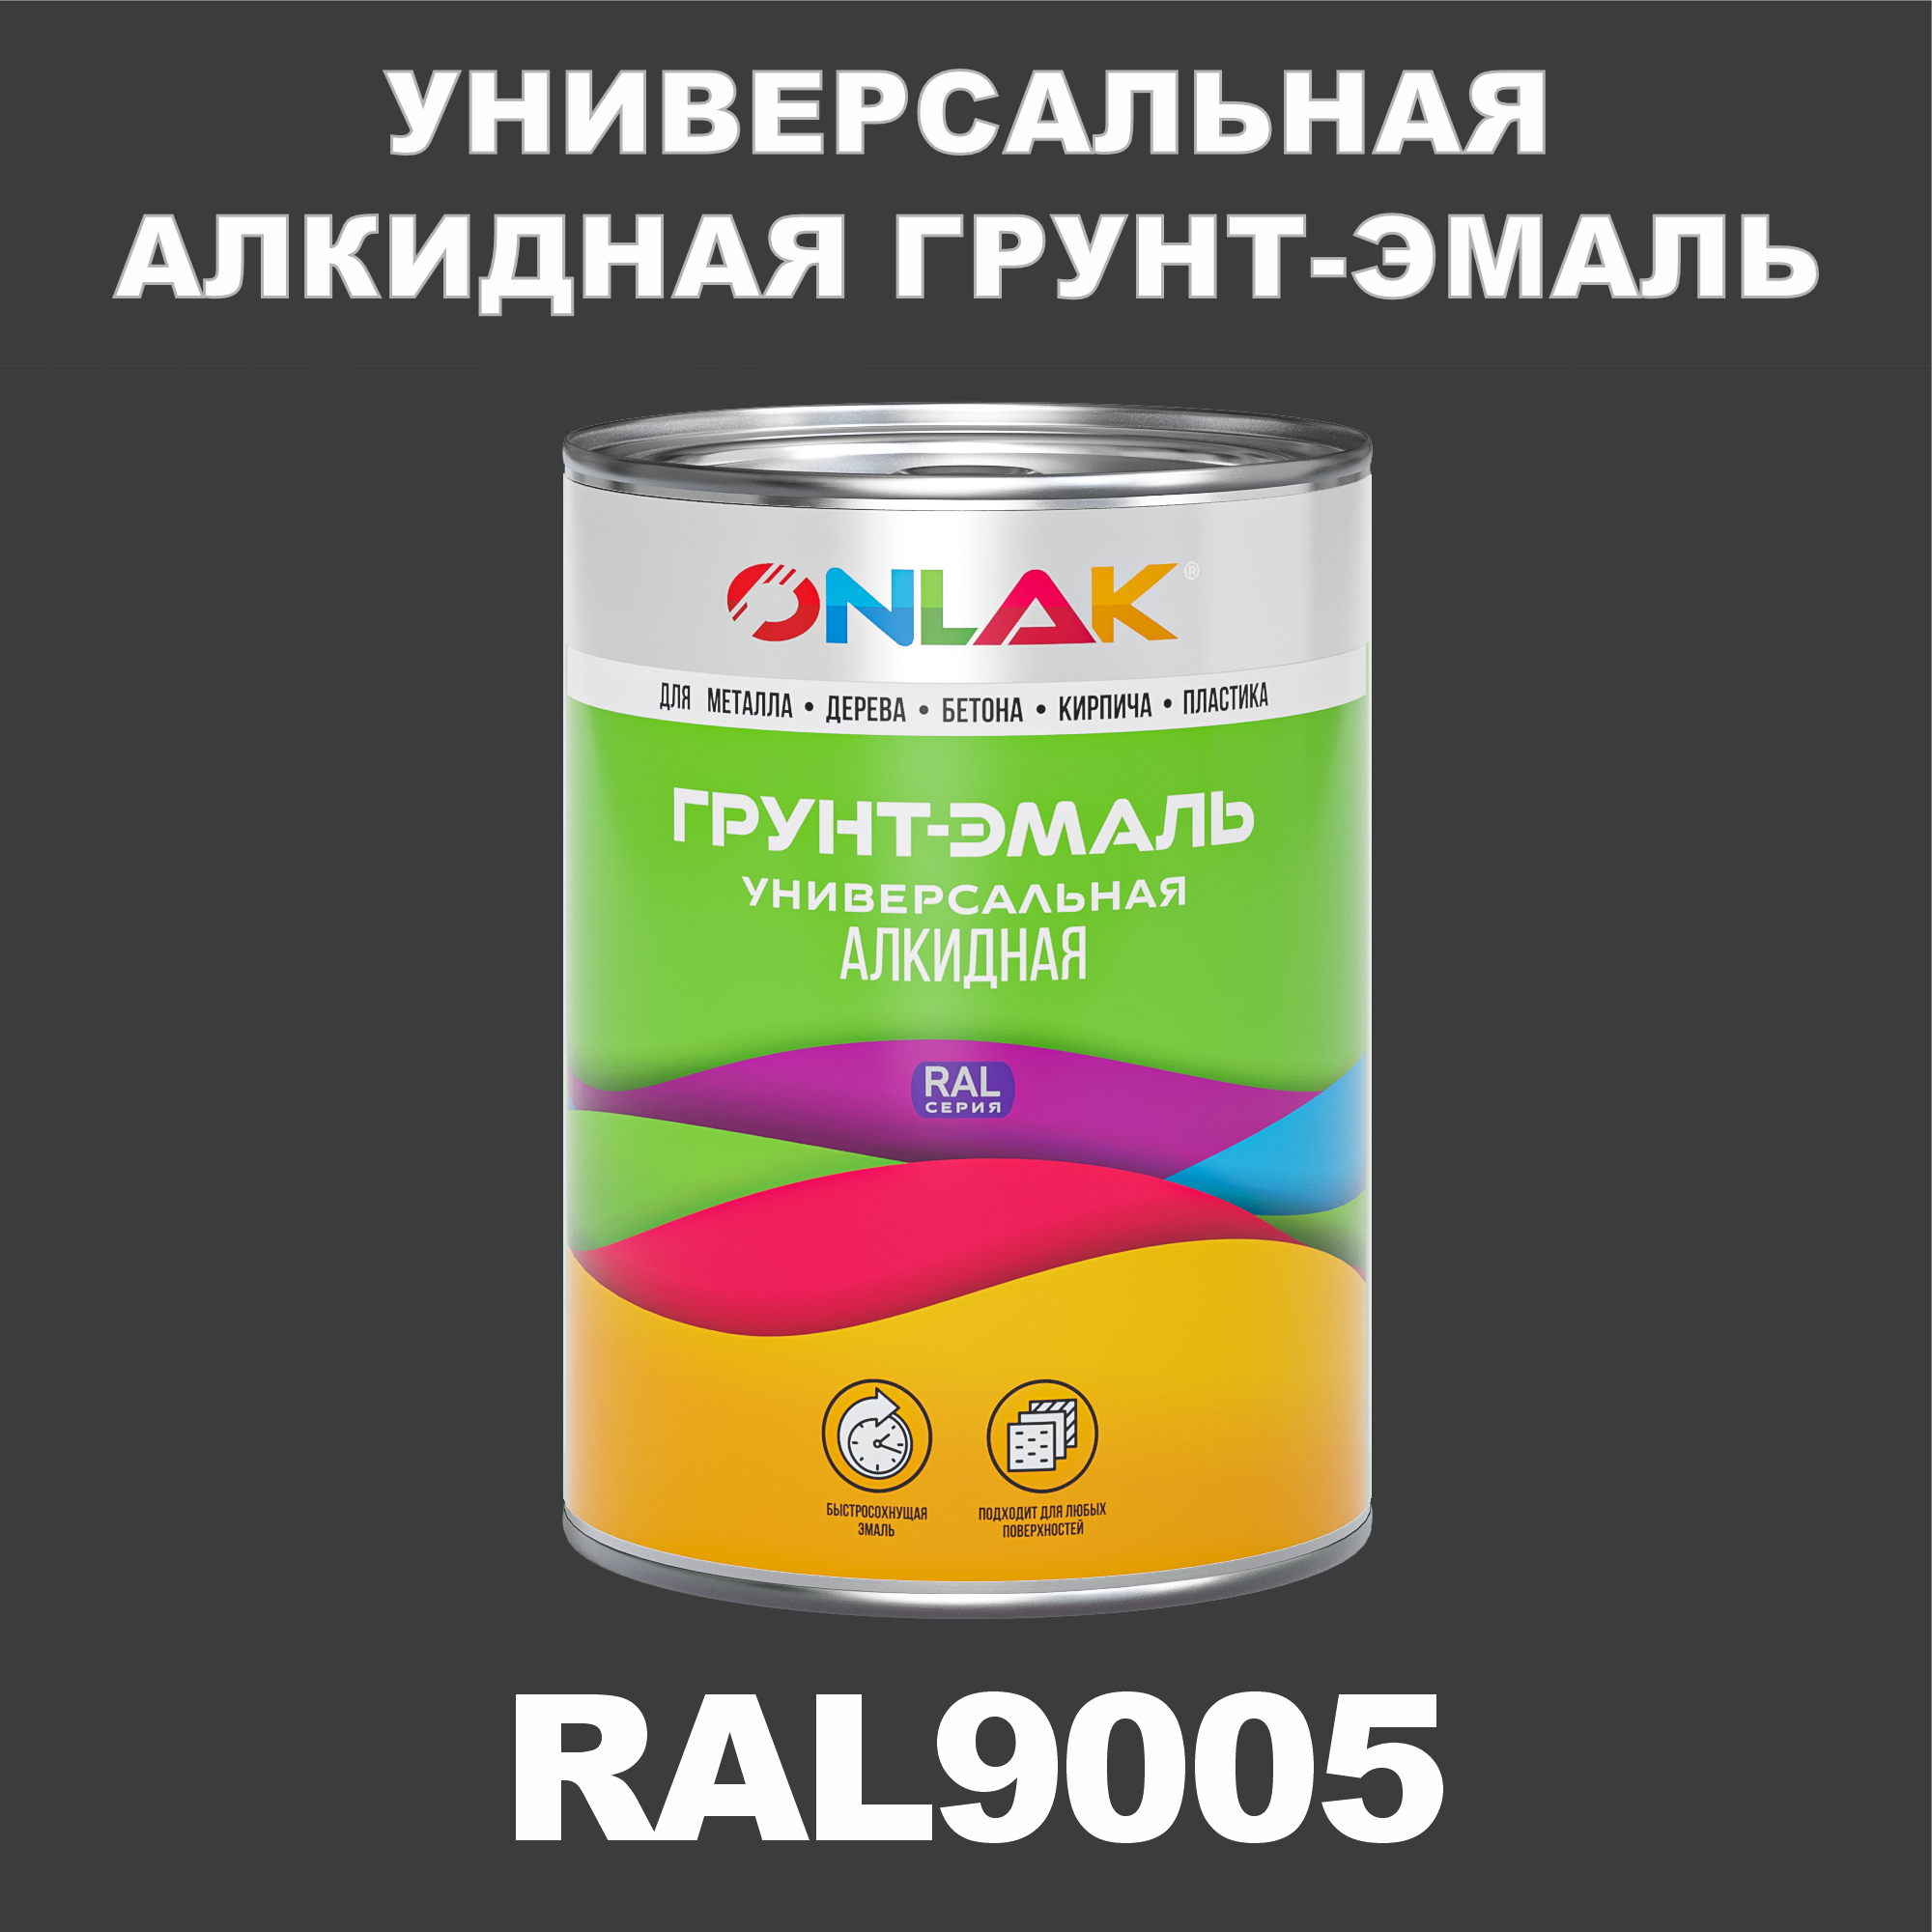 Грунт-эмаль ONLAK 1К RAL9005 антикоррозионная алкидная по металлу по ржавчине 1 кг грунт эмаль аэрозольная престиж 3в1 алкидная коричневая ral 8017 425 мл 0 425 кг